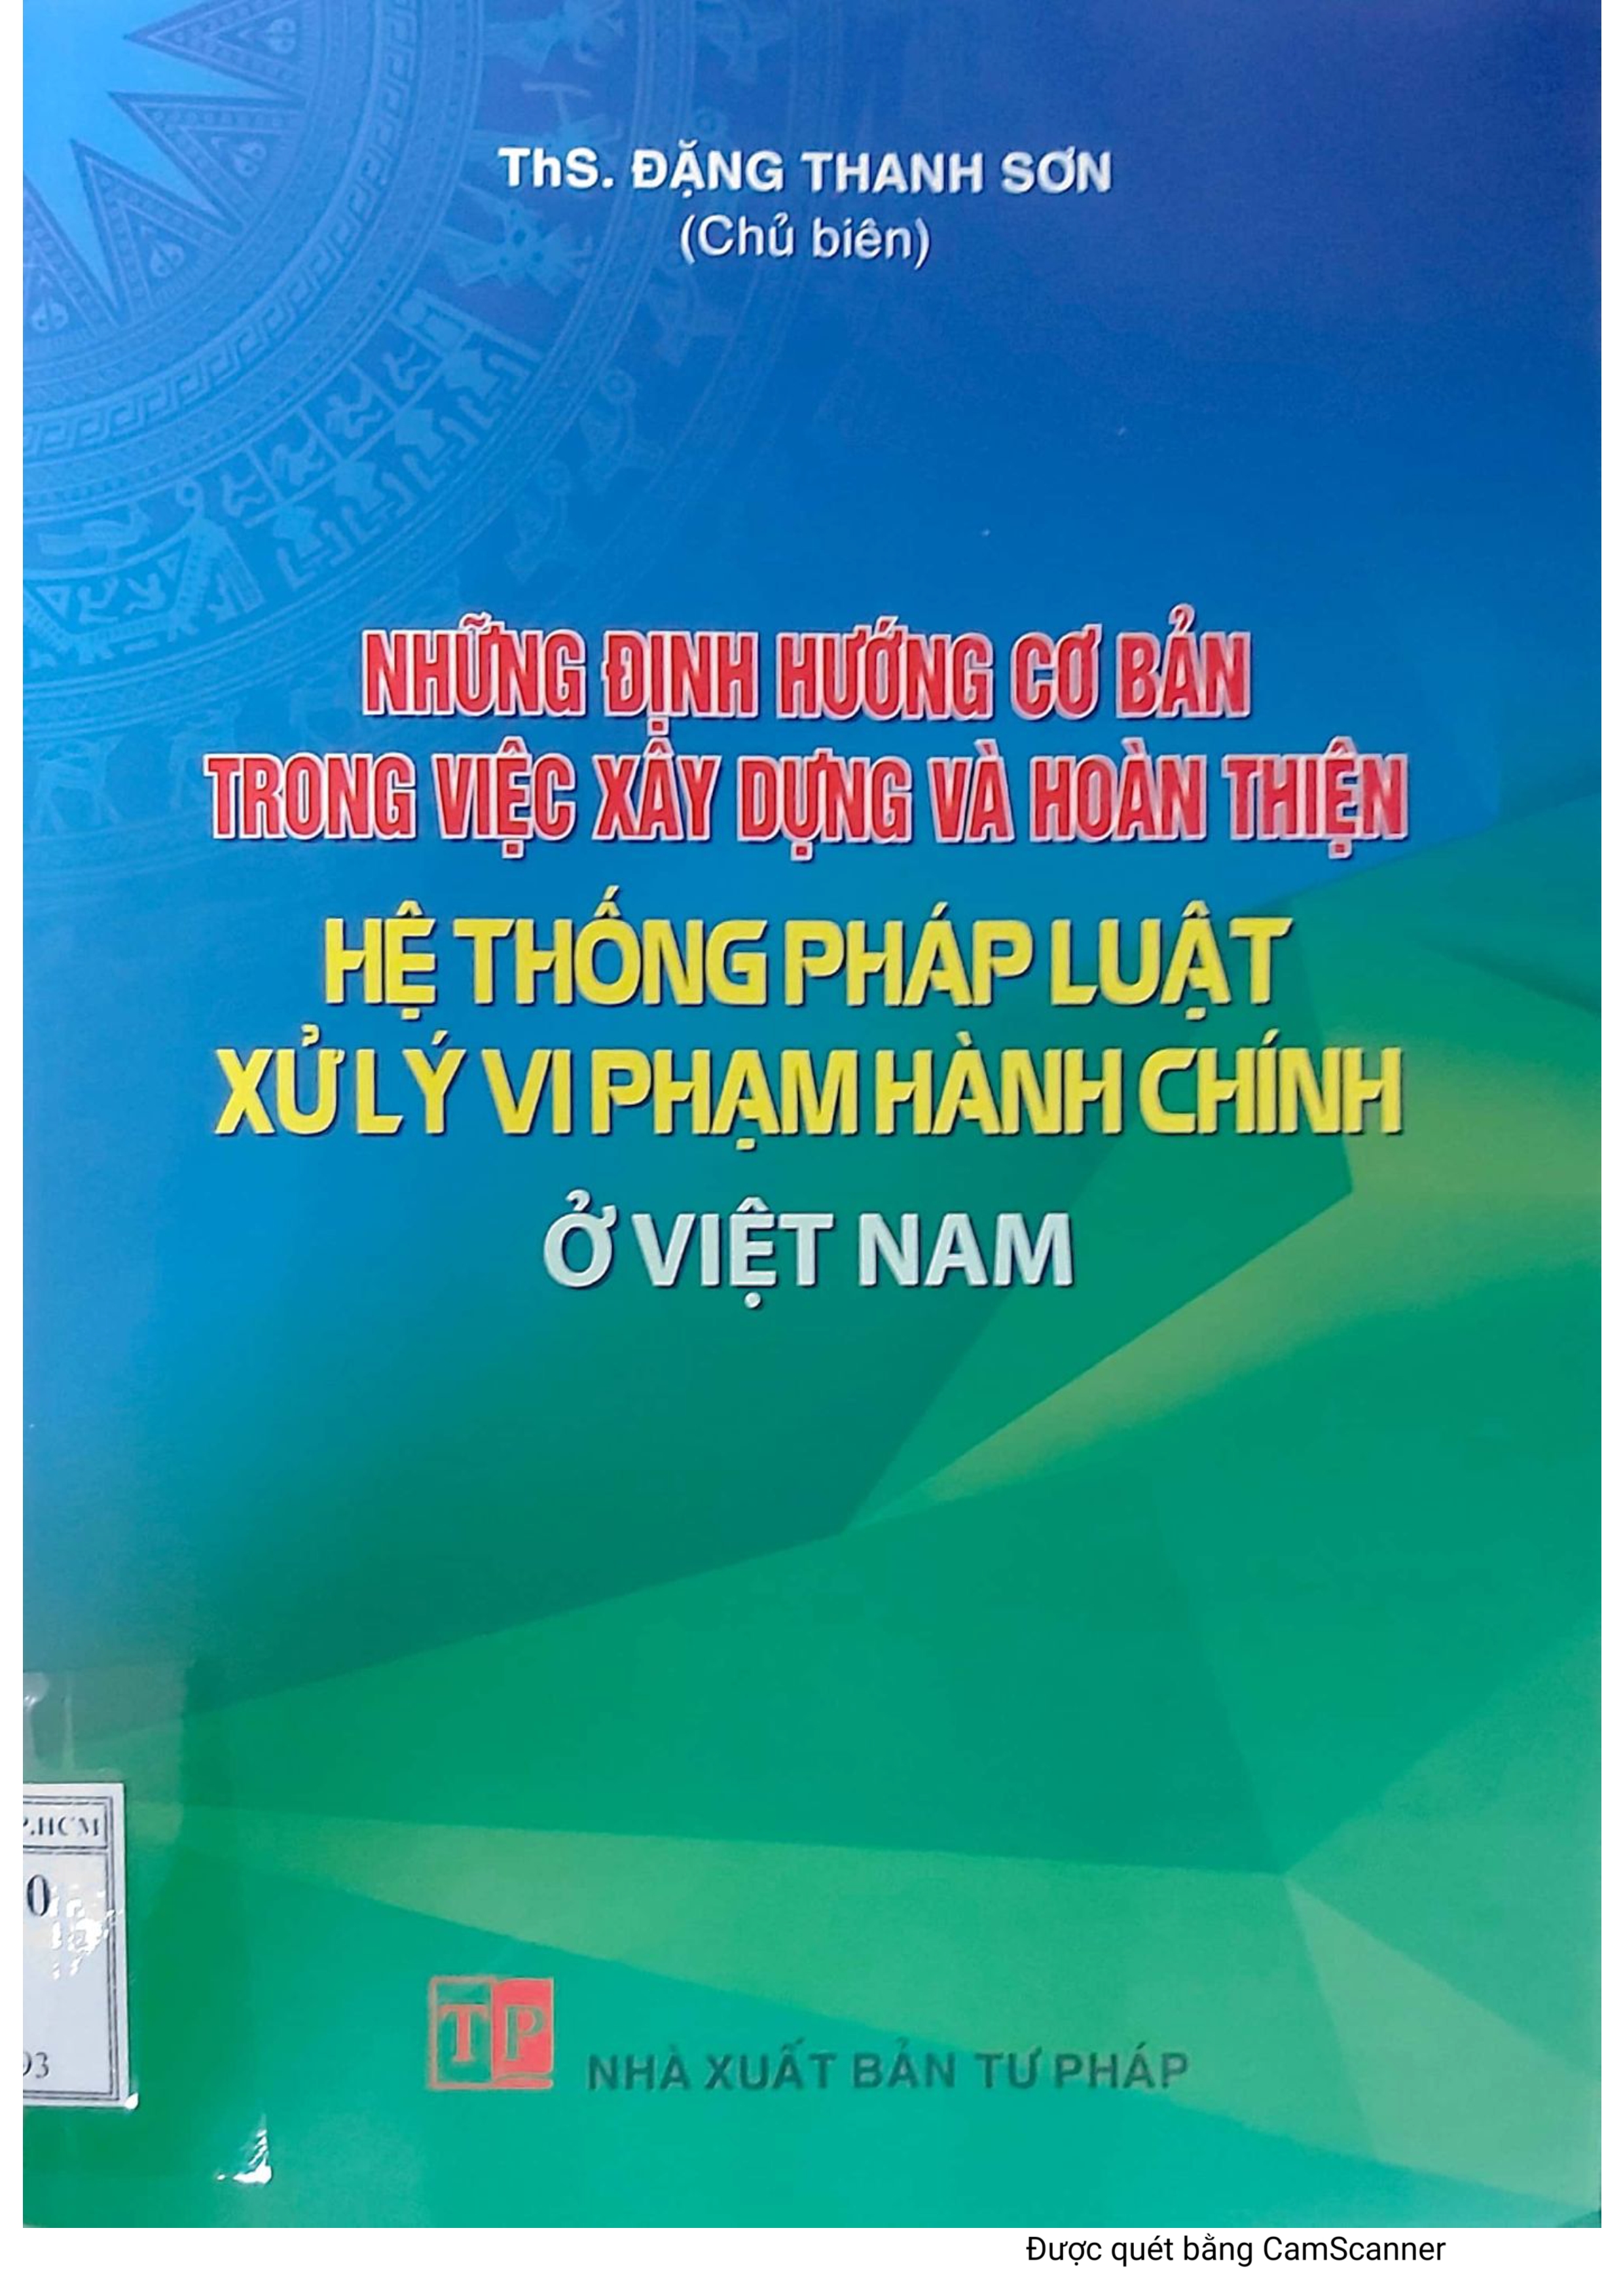 Những định hướng cơ bản trong việc xây dựng và hoàn thiện hệ thống pháp luật xử lý vi phạm hành chính ở Việt Nam